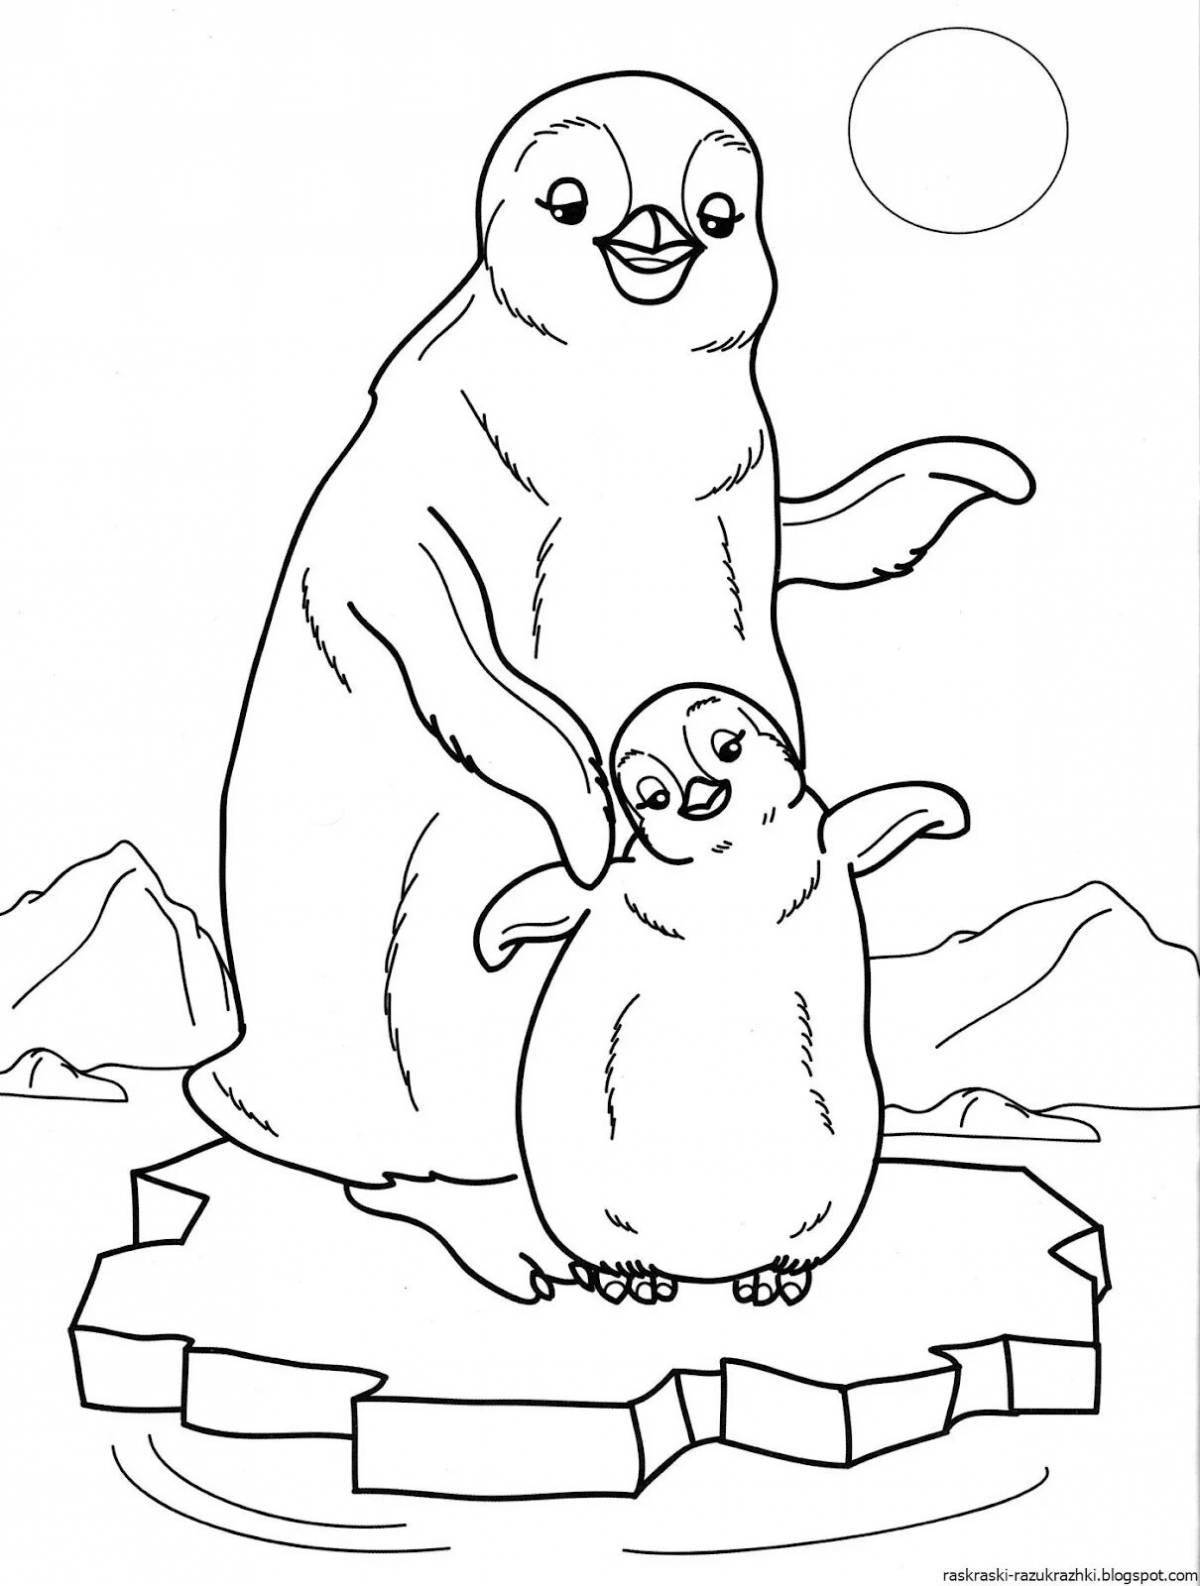 Веселая раскраска антарктида для детей 6-7 лет